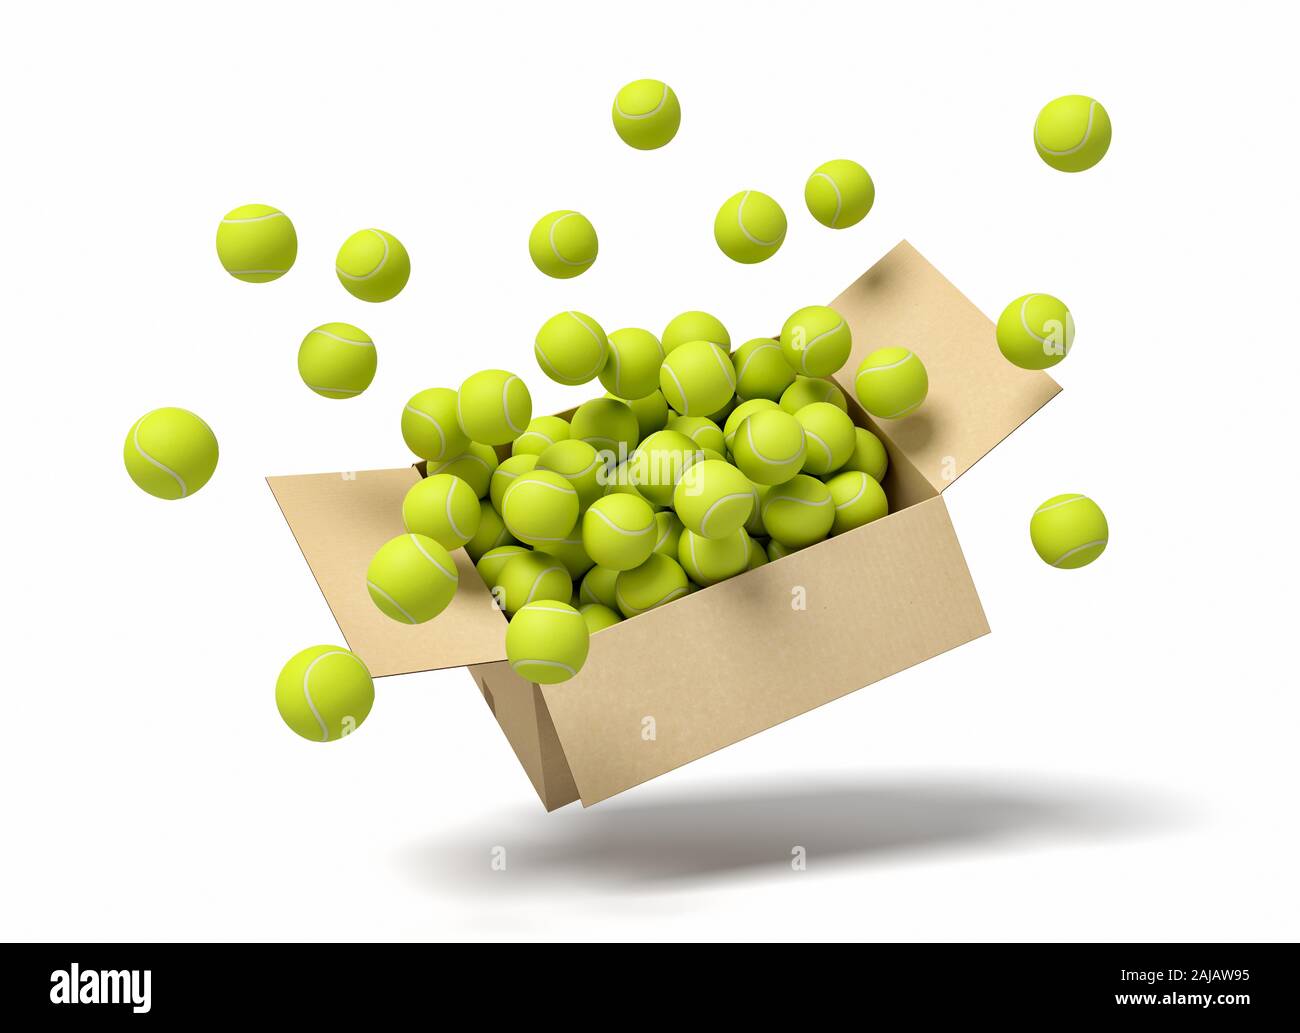 Representación 3D de la caja de cartón llena de pelotas de tenis en el aire. Deportes de equipo. Gimnasio de suministros. Artículos deportivos. Foto de stock